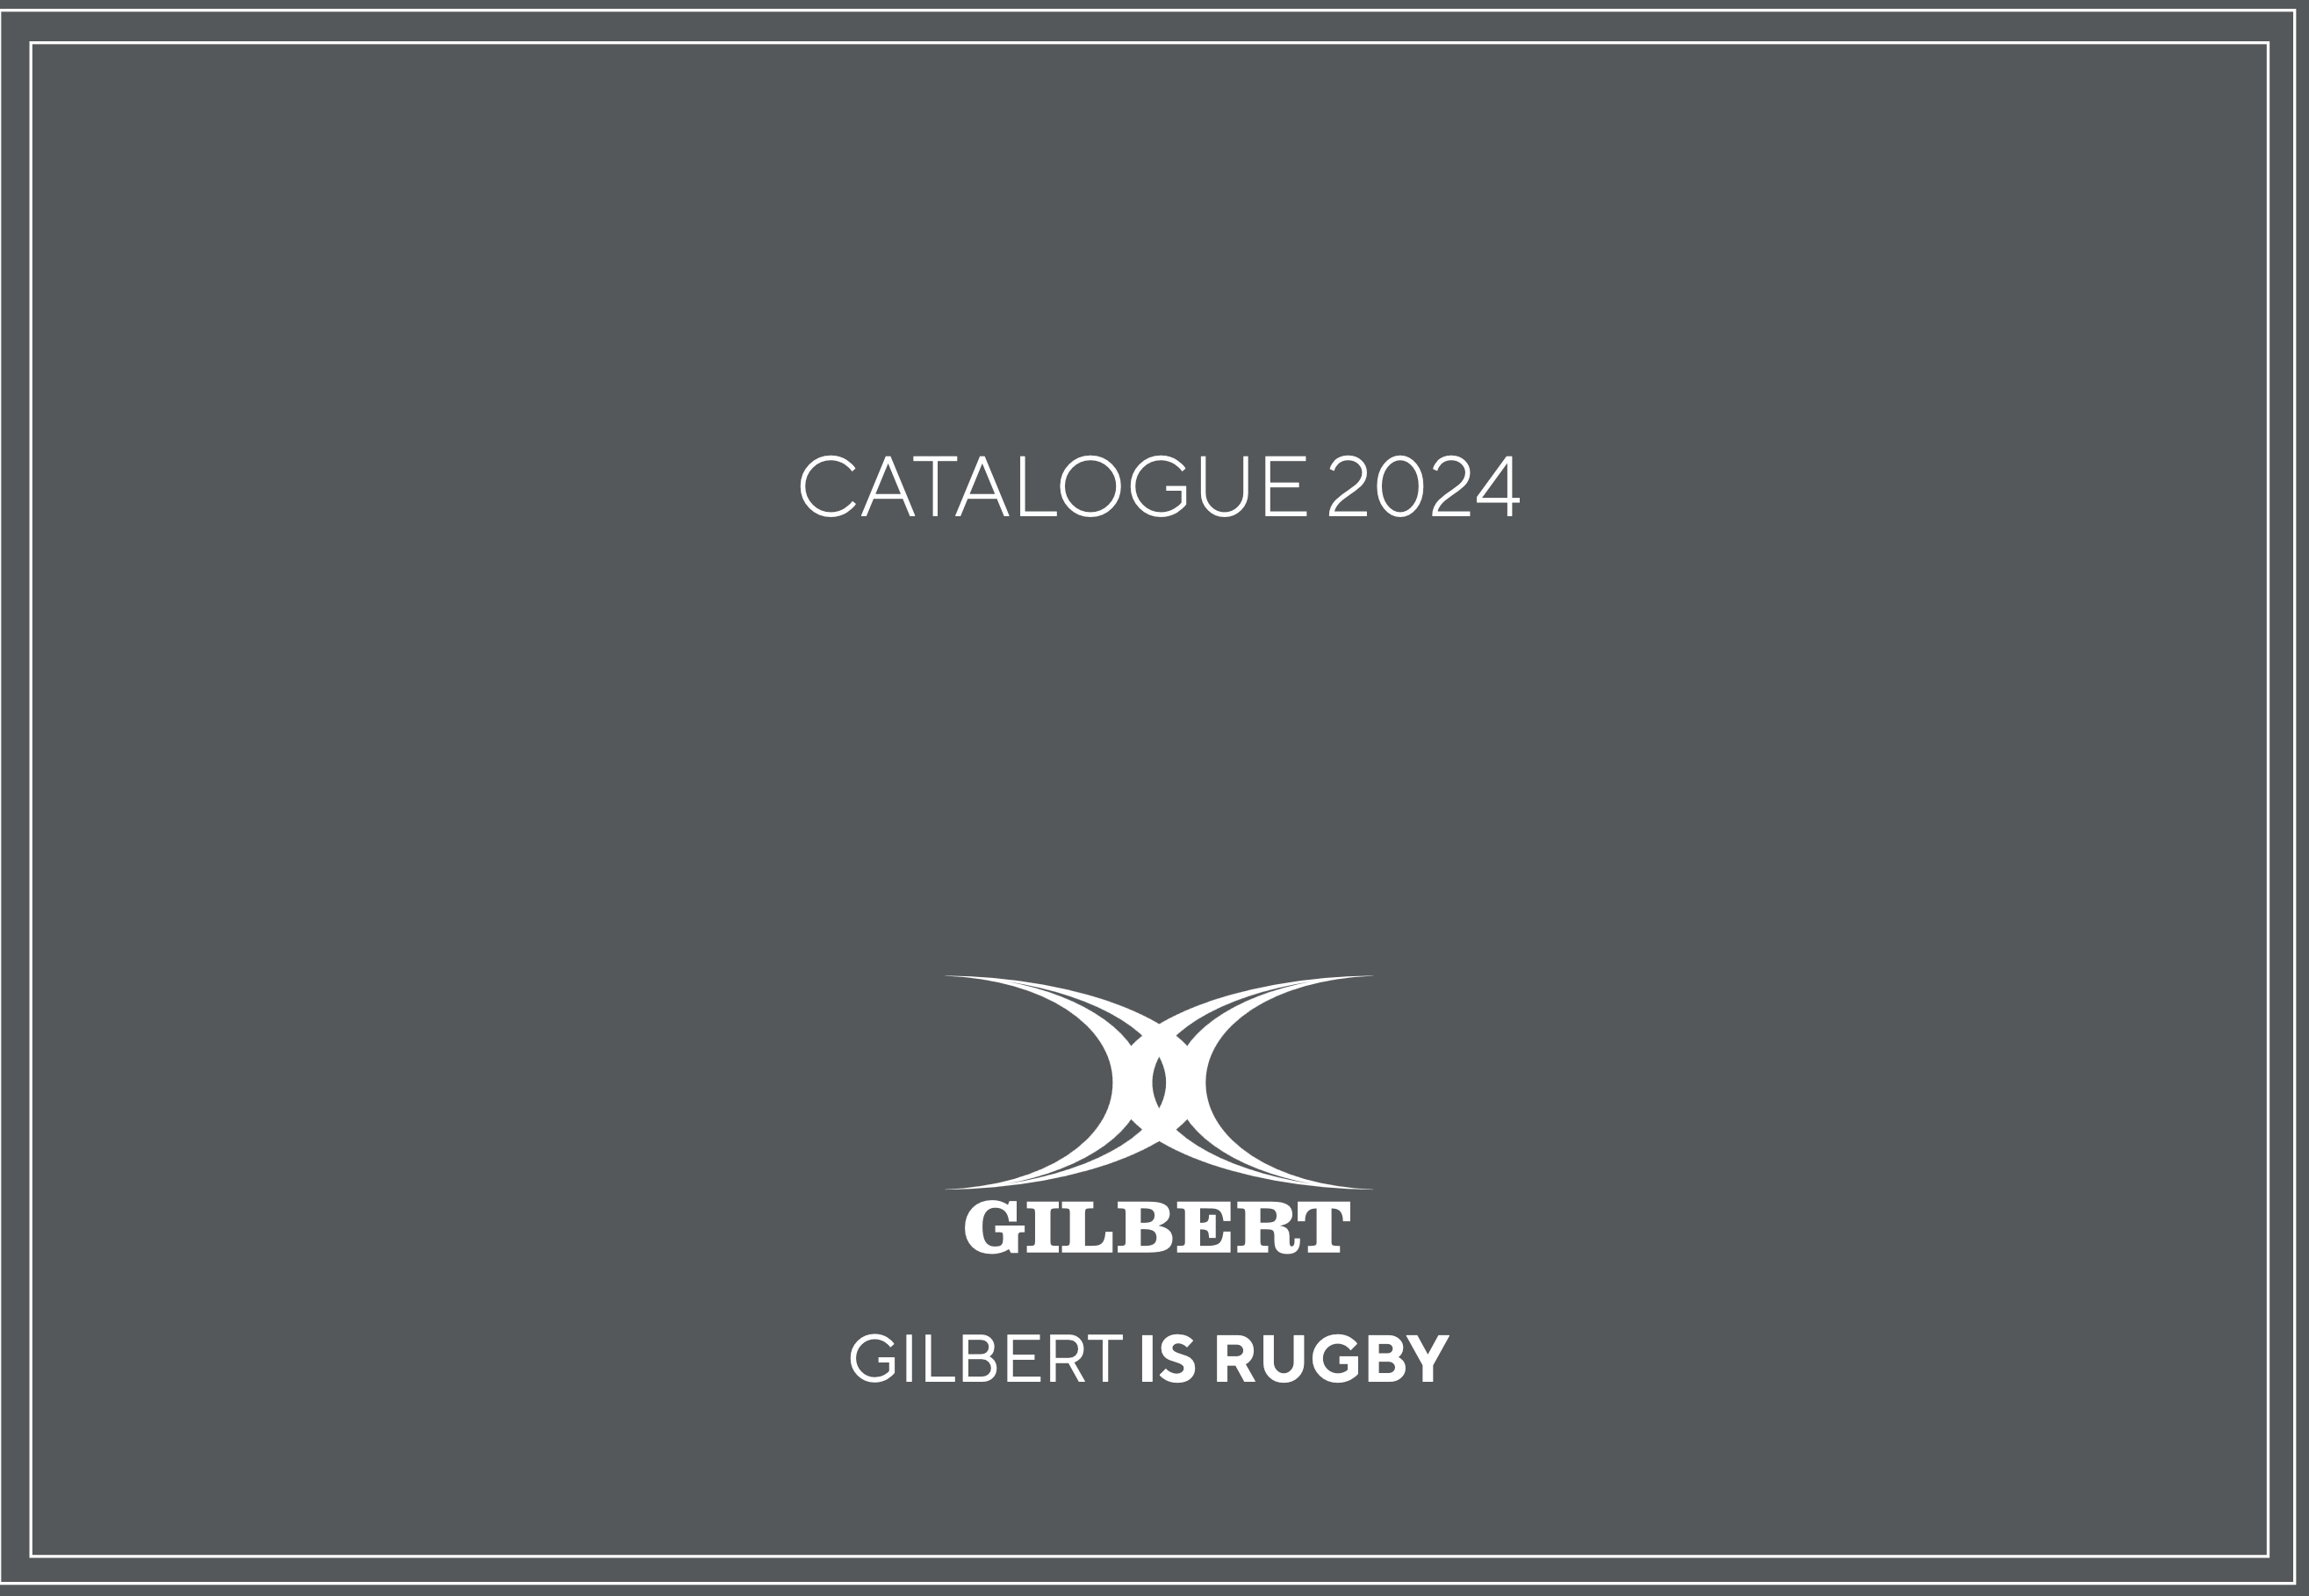 Upload Gilbert catalog 2024